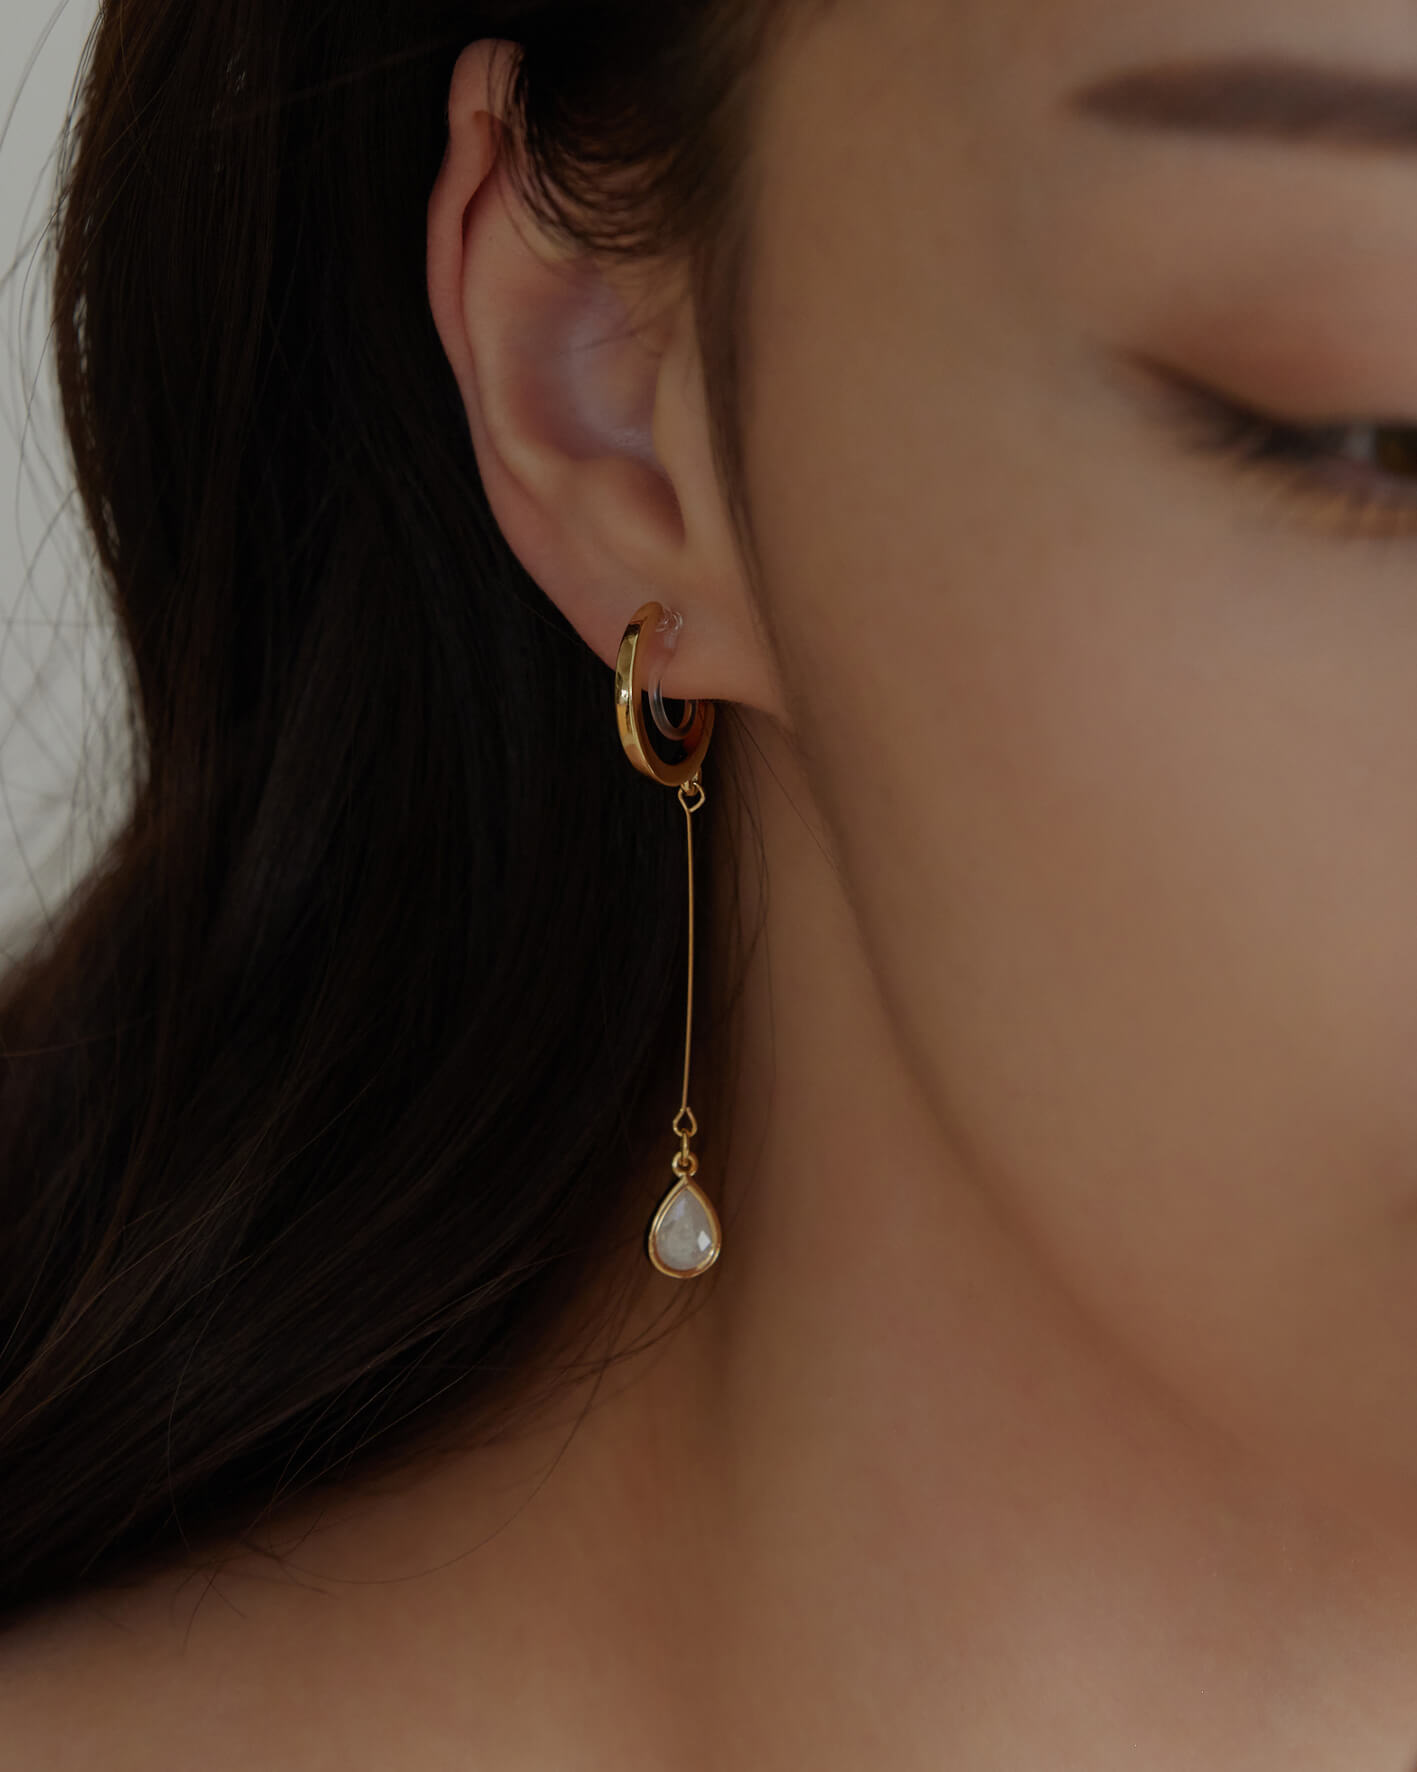 Eco安珂,韓國飾品,韓國耳環,矽膠夾耳環,透明耳夾耳環,無痛耳夾耳環,透明耳夾垂墜耳環